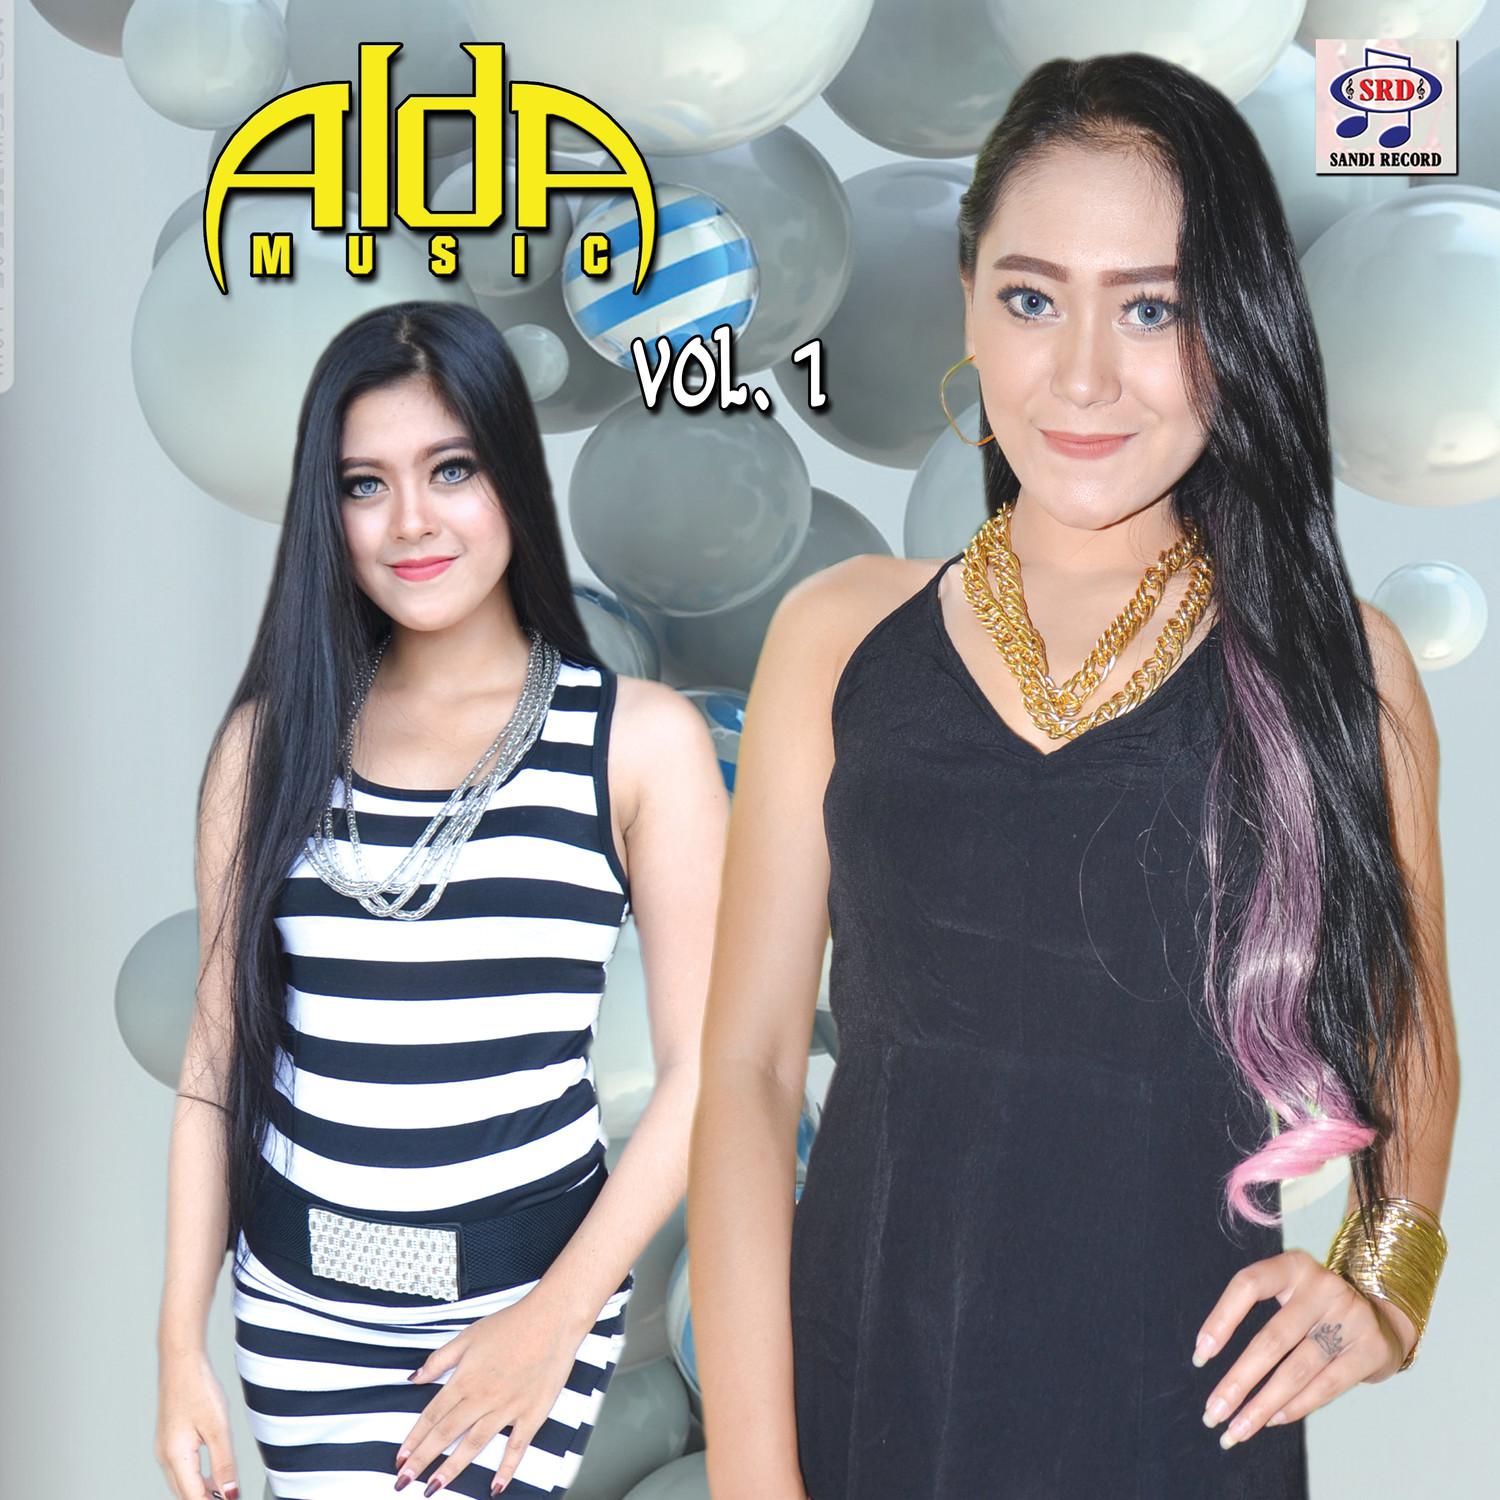 Alda Music, Vol. 1